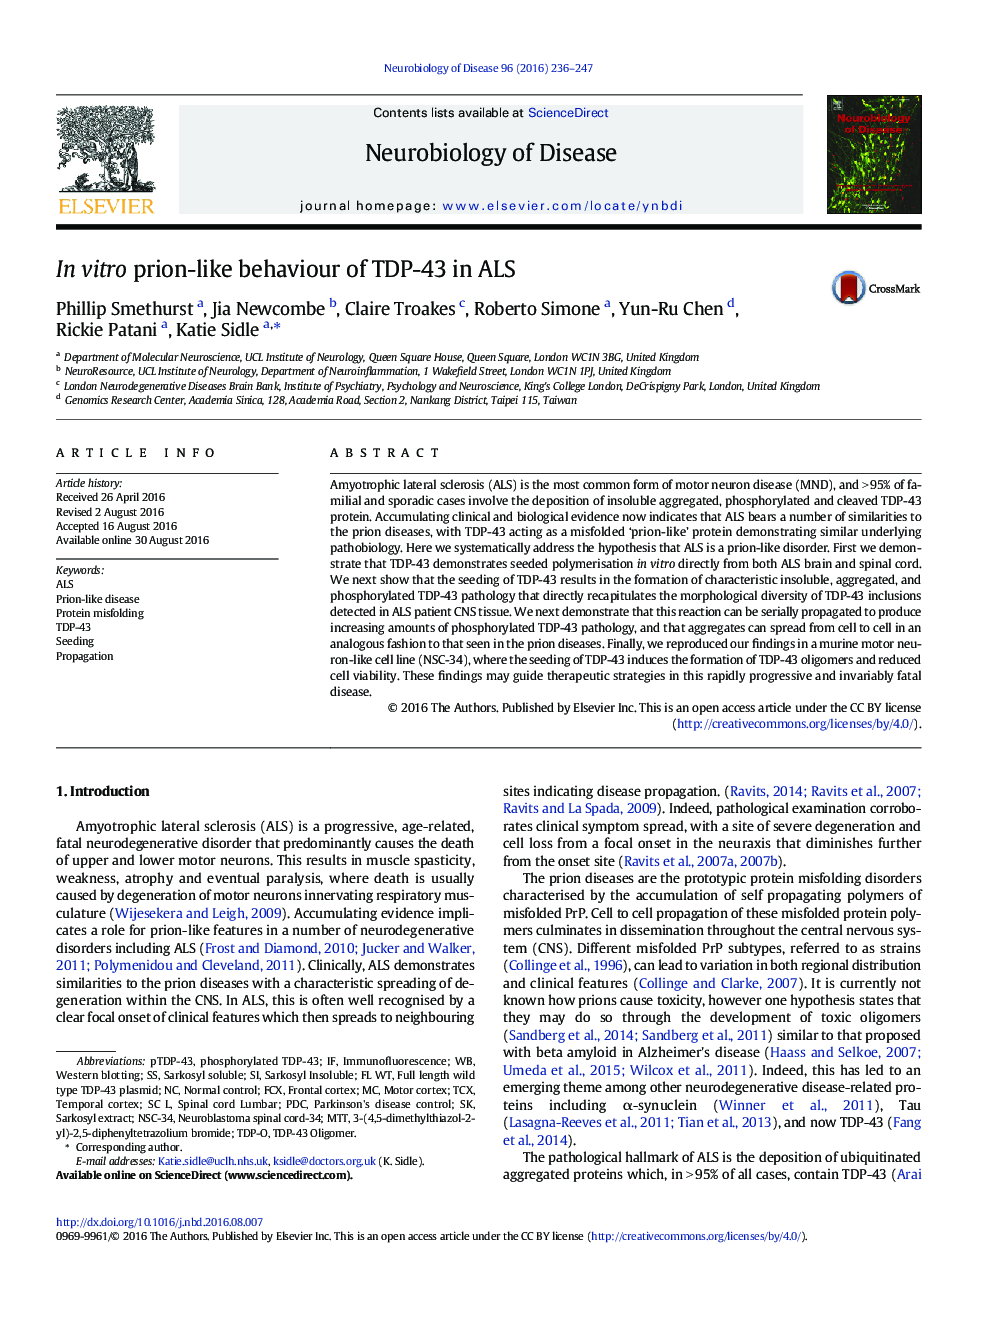 In vitro prion-like behaviour of TDP-43 in ALS